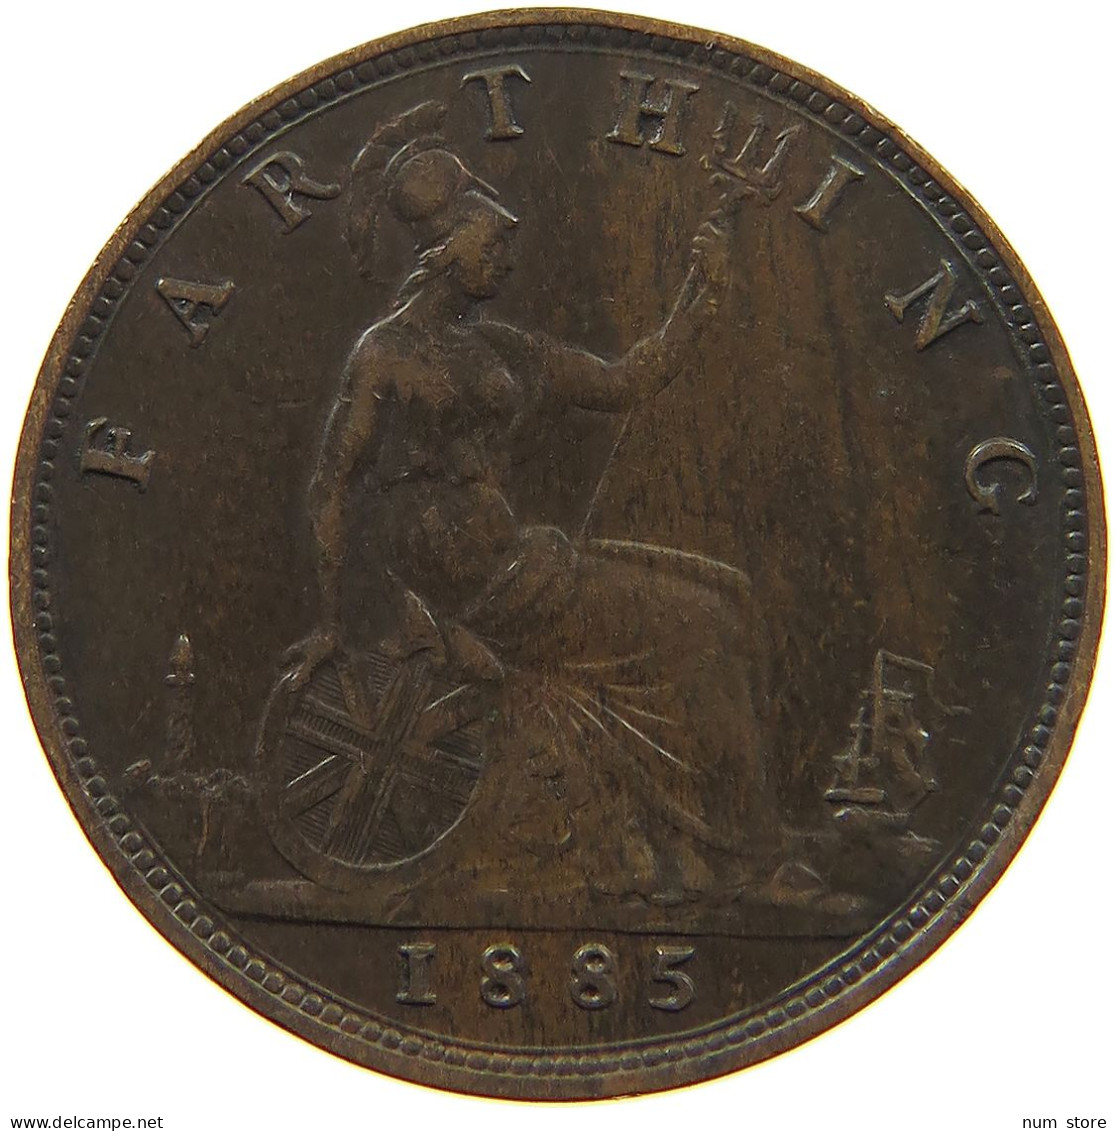 GREAT BRITAIN FARTHING 1885 Victoria 1837-1901 #c006 0193 - B. 1 Farthing